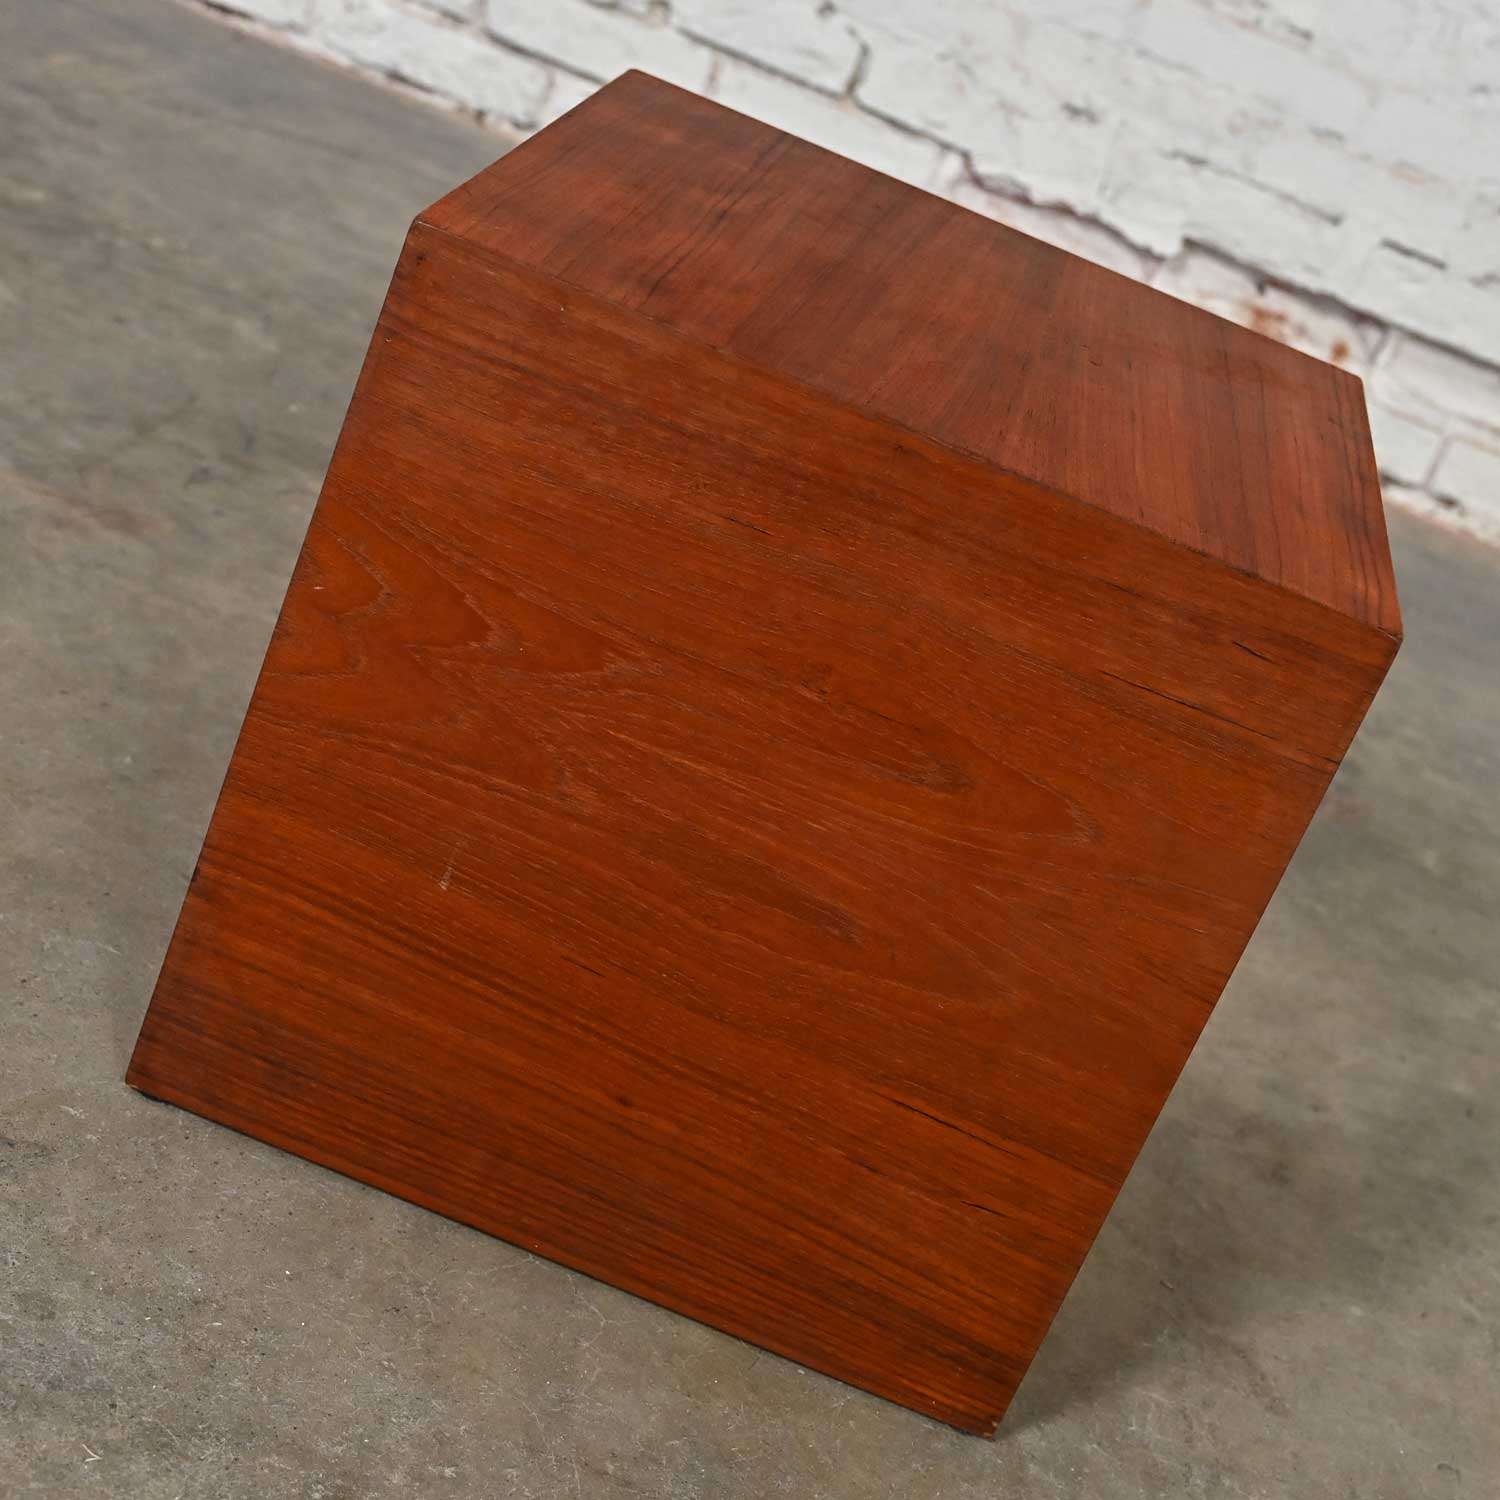 Mid-20th Century MCM to Scandinavian Modern Teak Veneer Cube Side or End Table